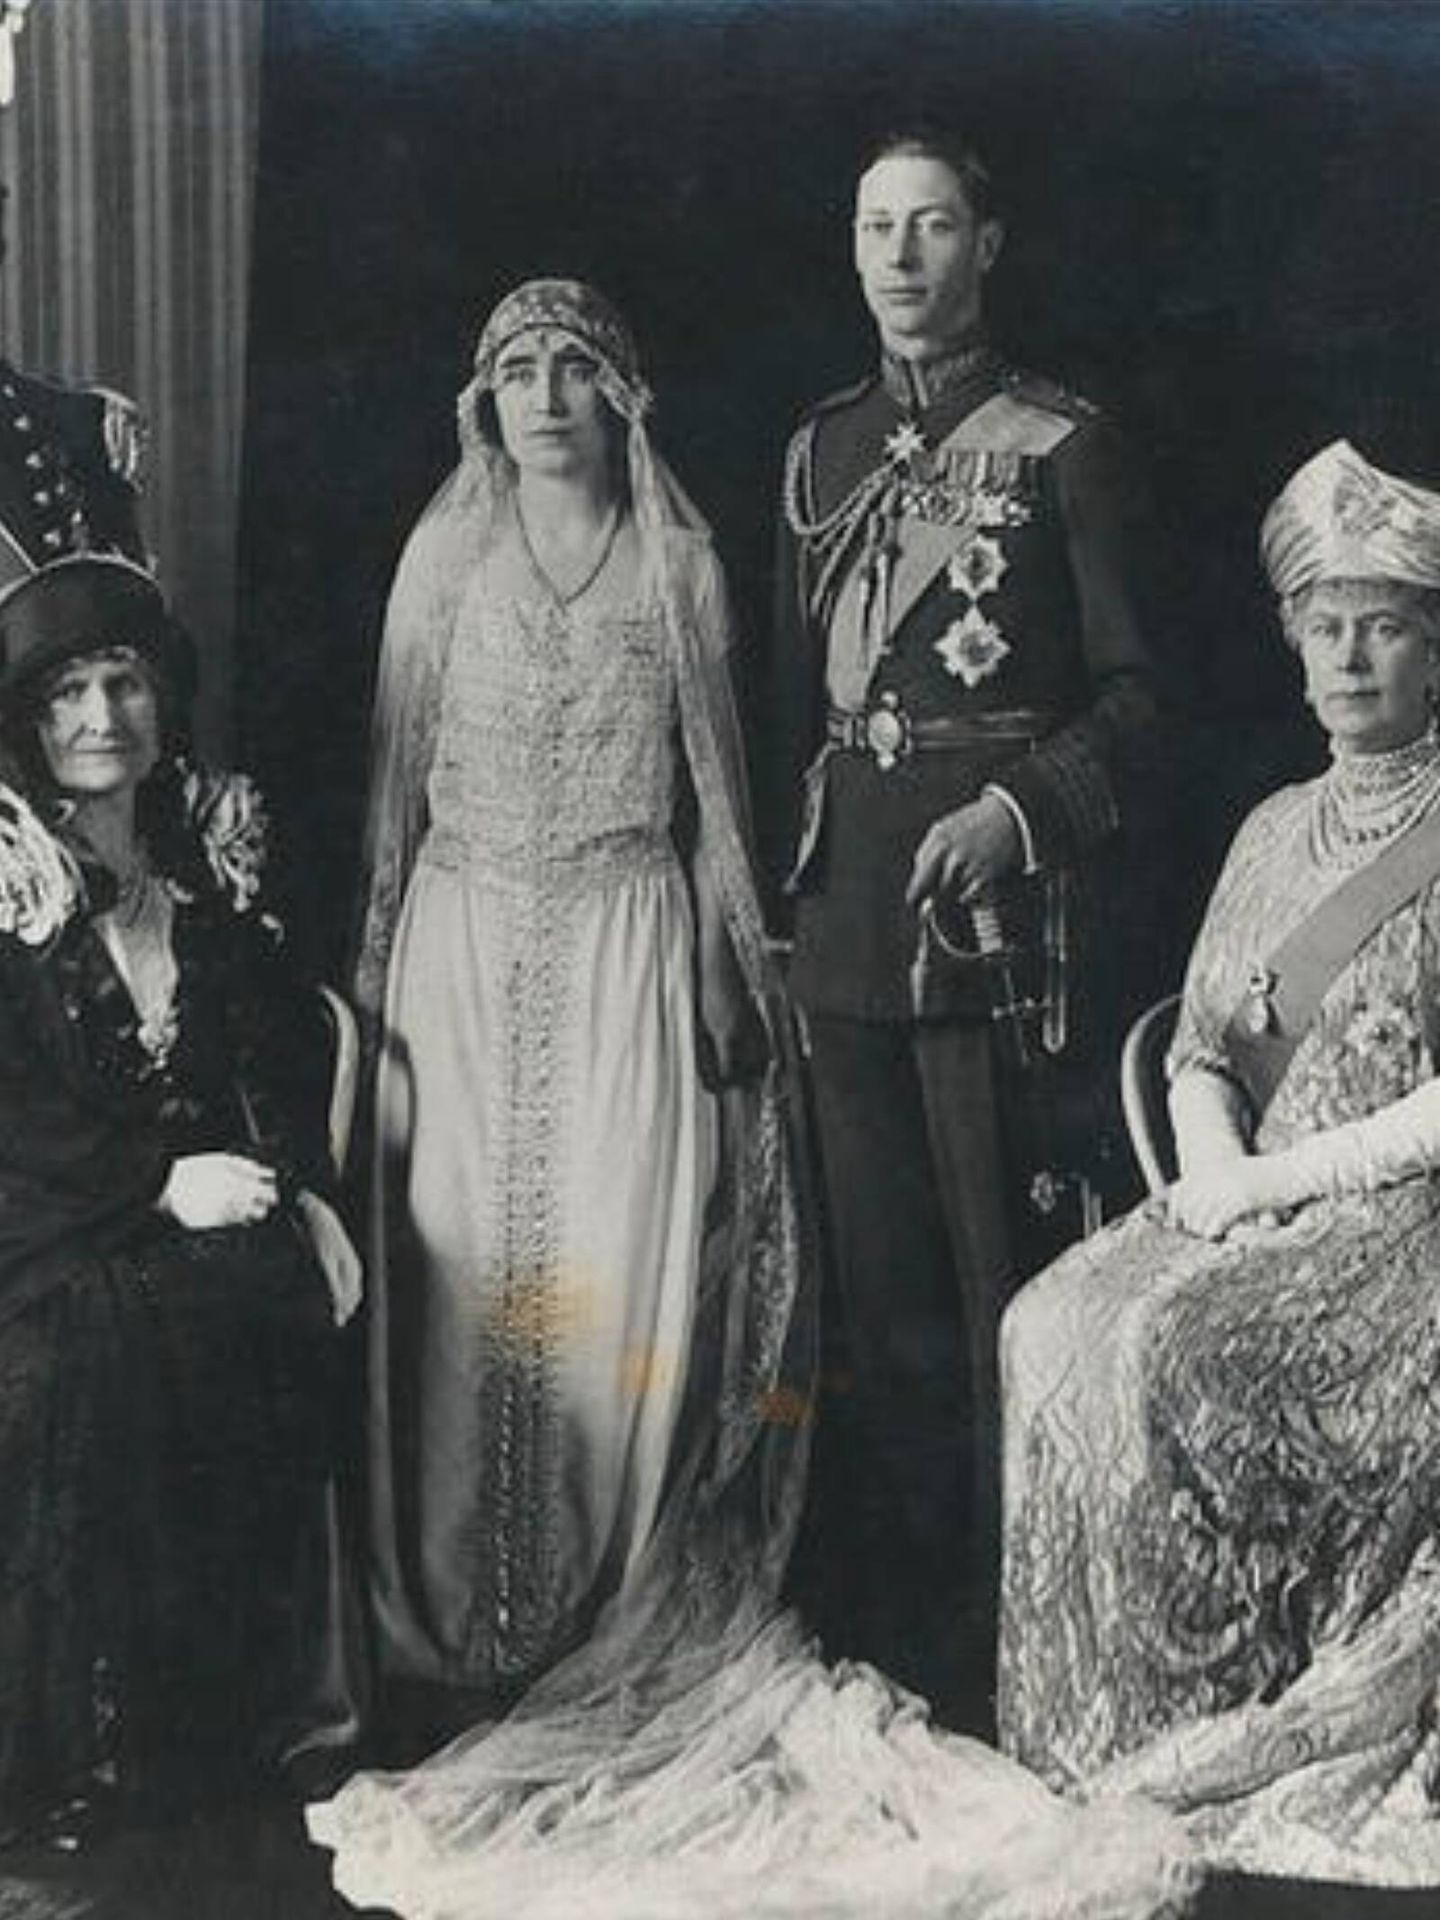 Los príncipes Isabel y Alberto, después rey Jorge VI, junto a sus respectivas madres. (Cortesía/Royal Collection Trust)